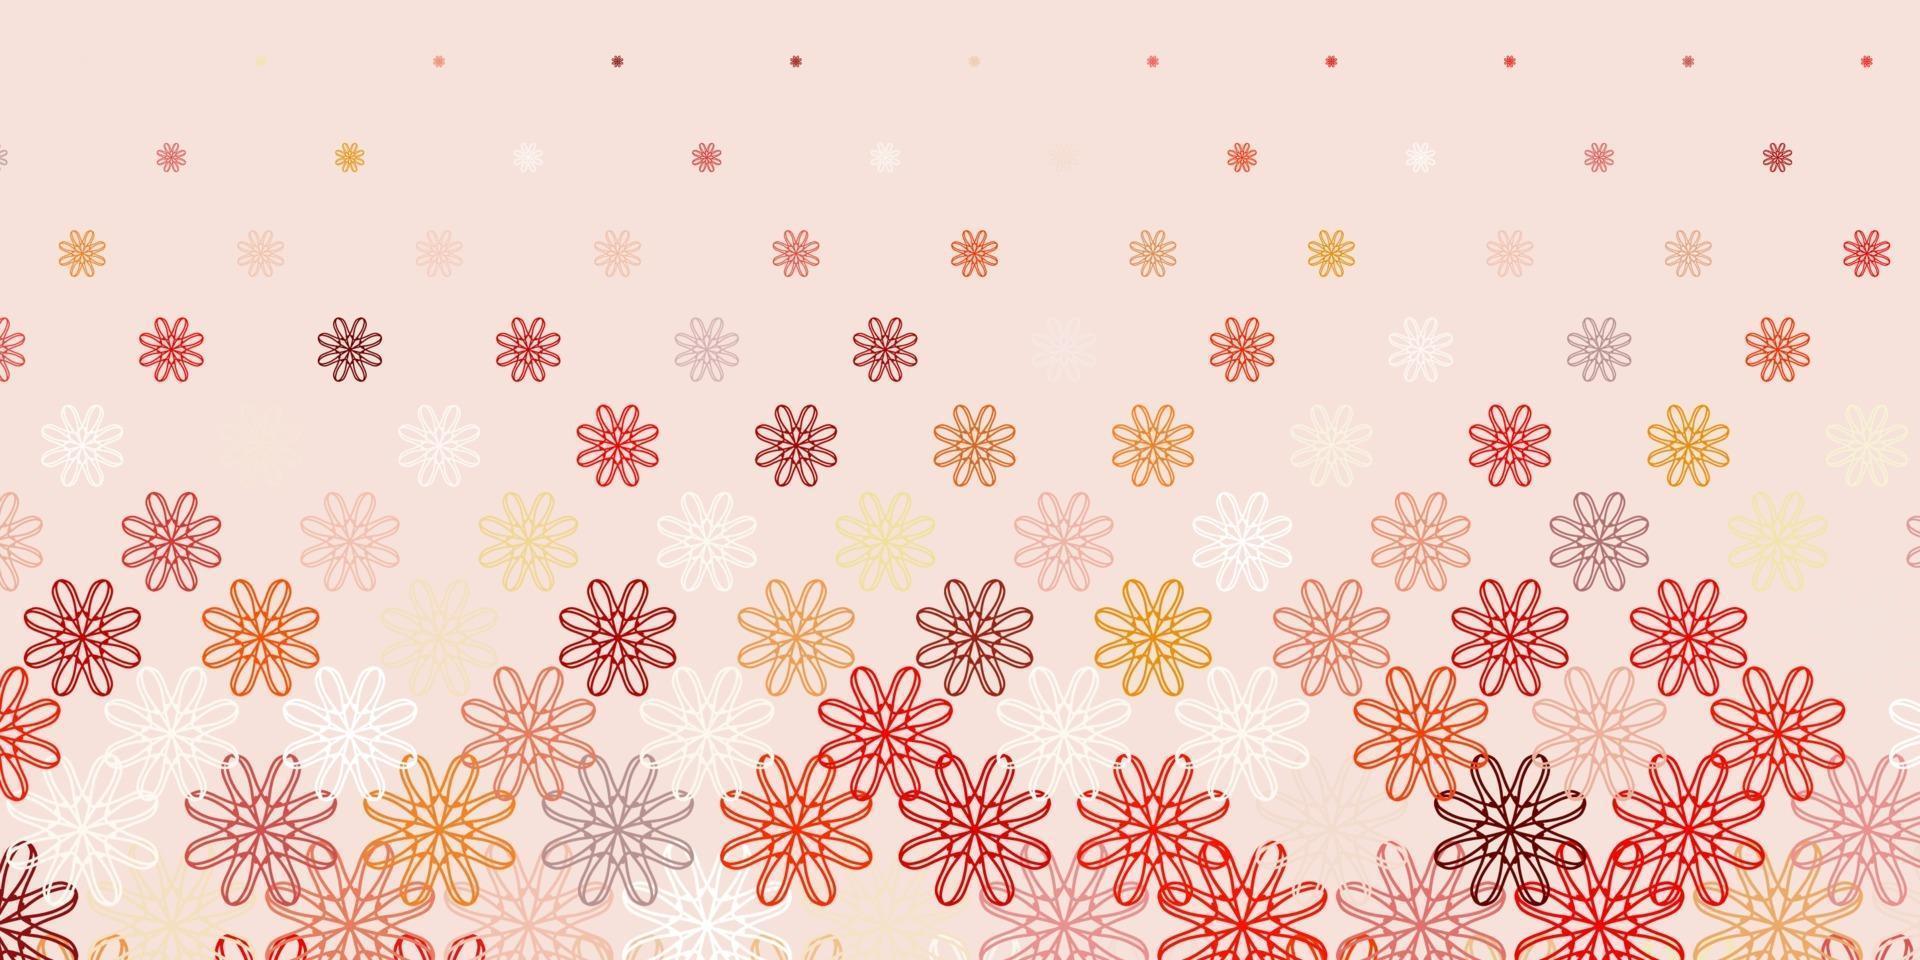 sfondo di doodle vettoriale arancione chiaro con fiori.